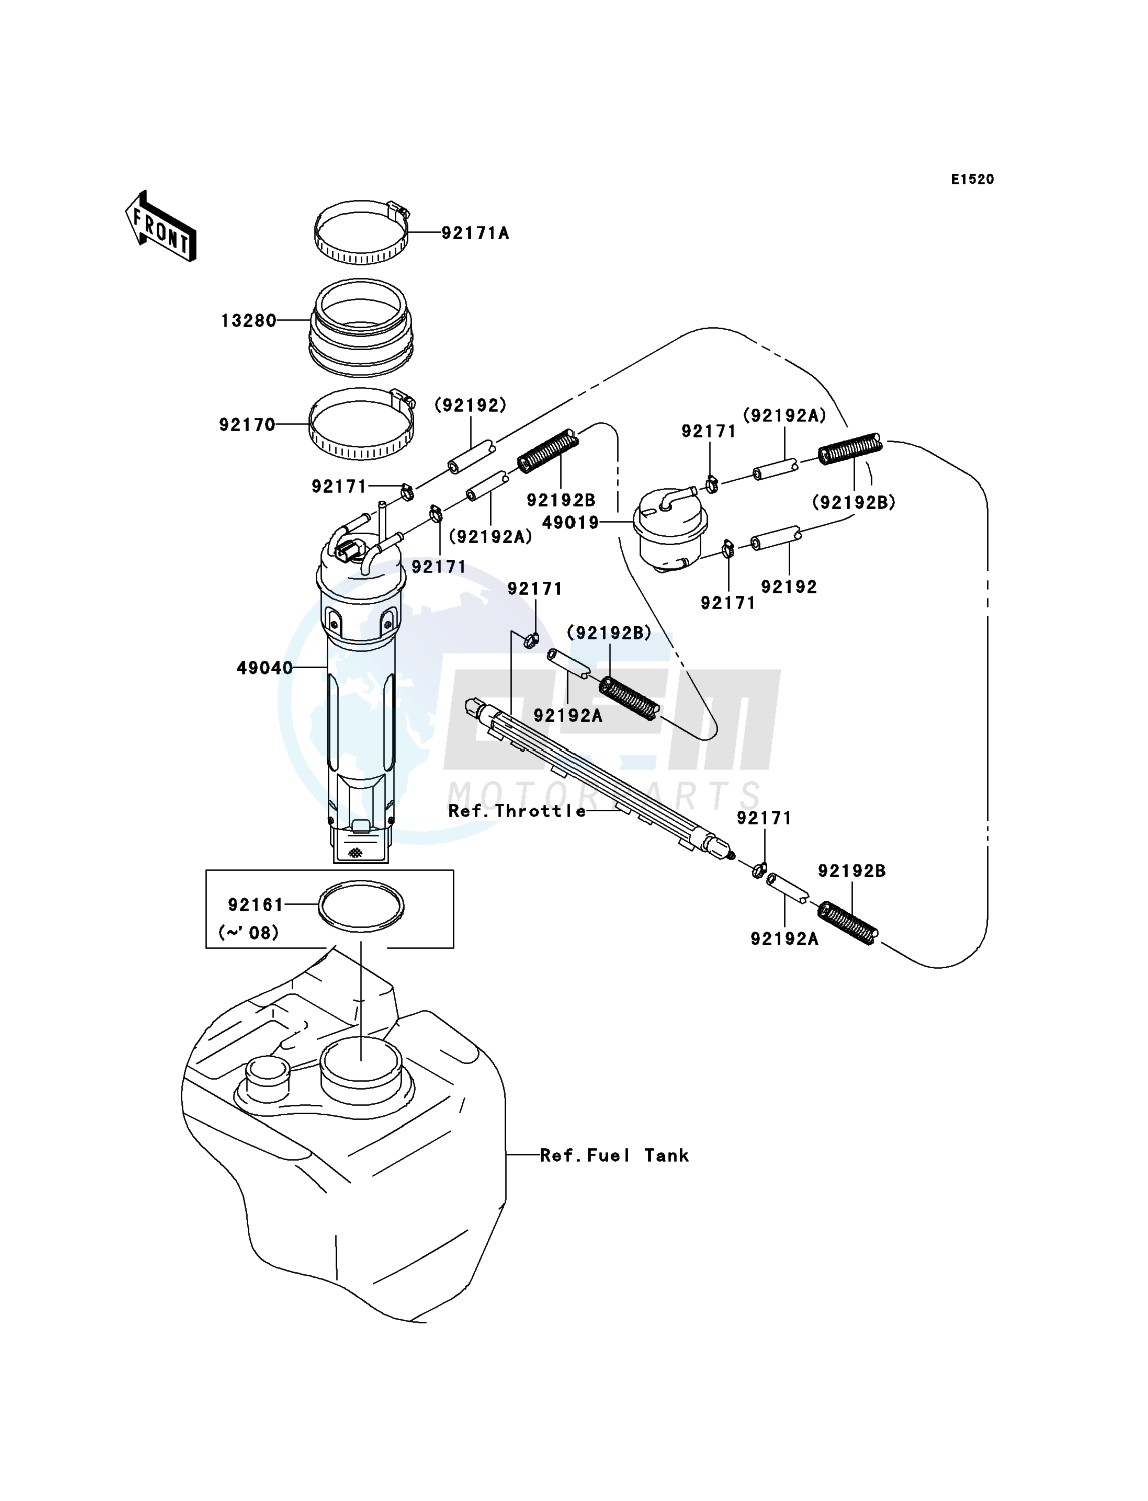 Fuel Pump blueprint